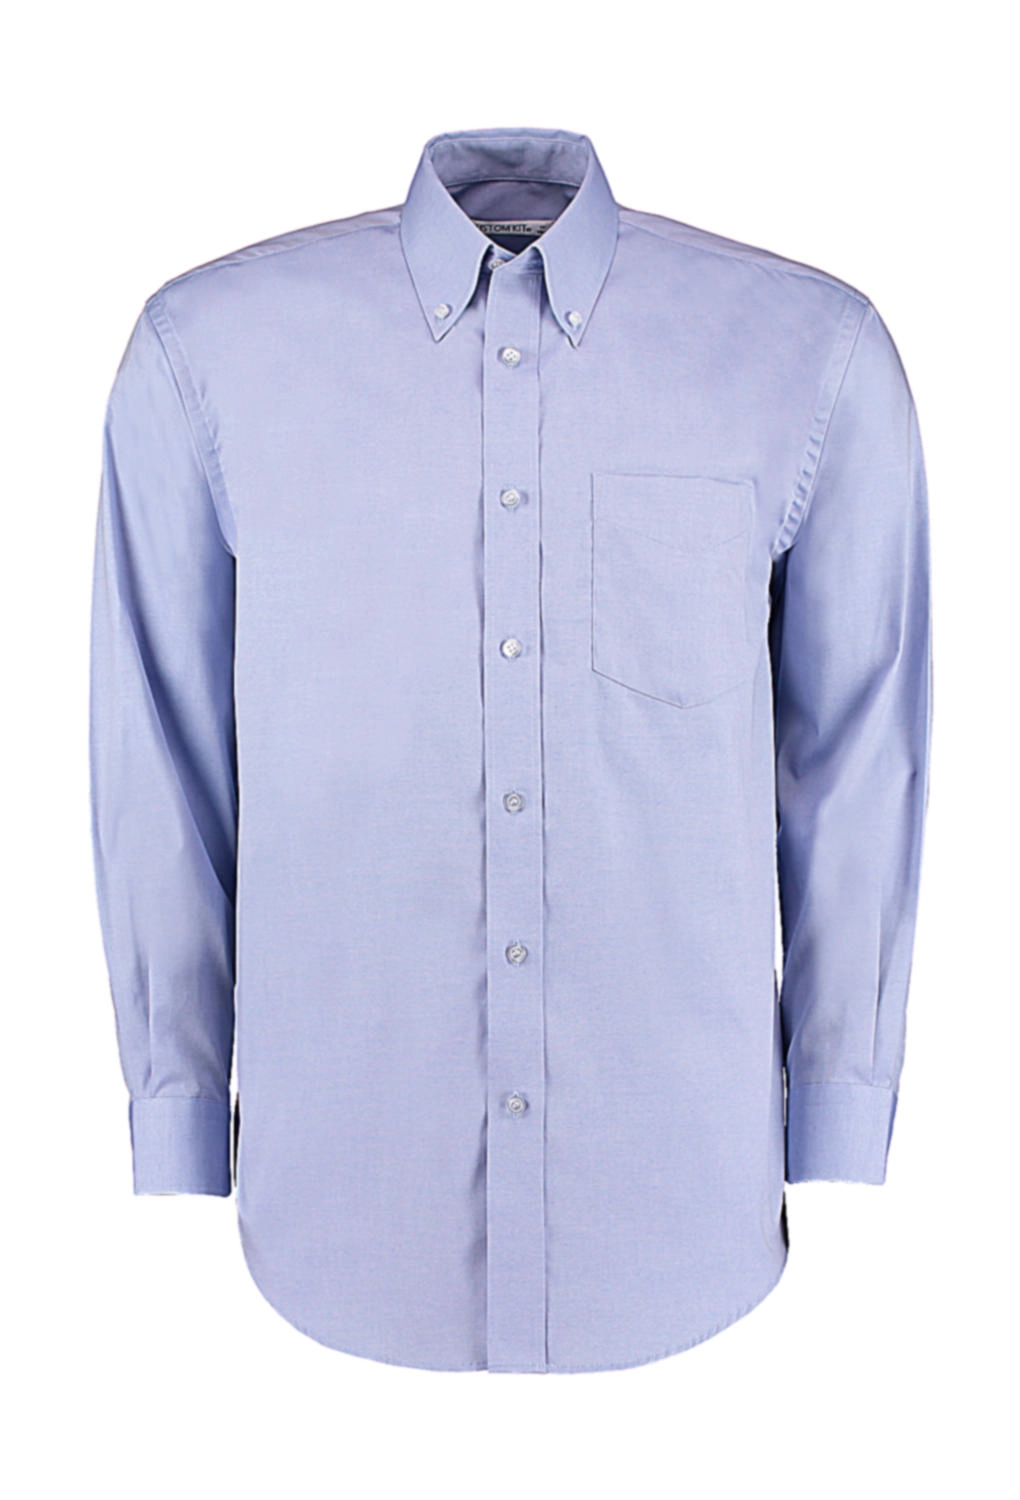 Classic Fit Premium Oxford Shirt zum Besticken und Bedrucken in der Farbe Light Blue mit Ihren Logo, Schriftzug oder Motiv.